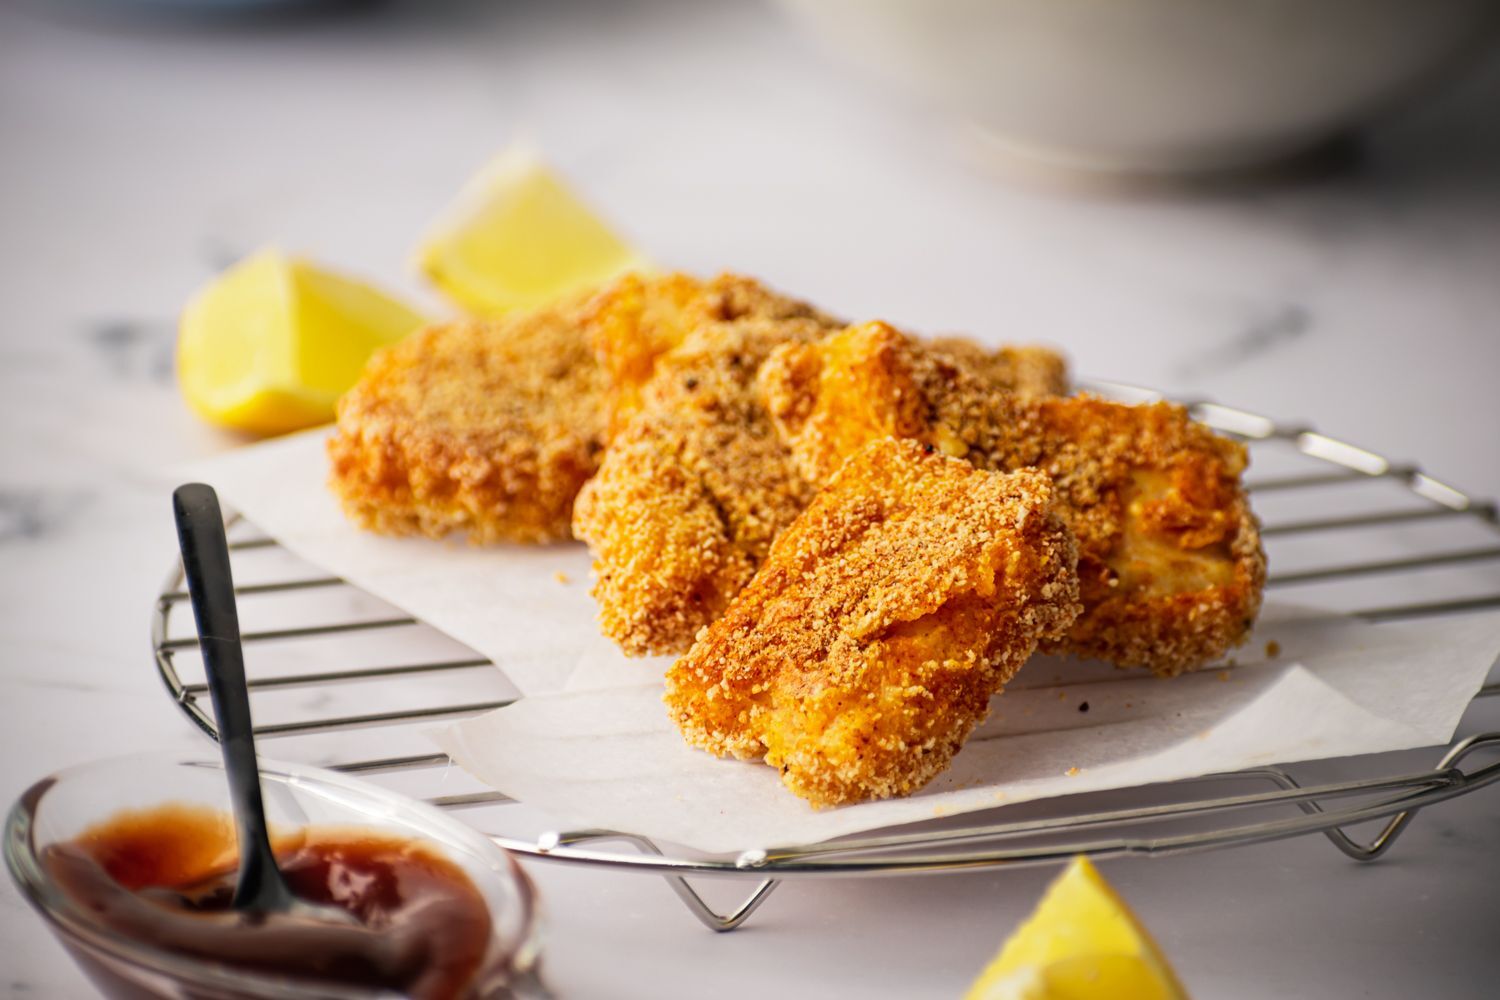 Crispy Baked Fish (5 Ingredients!) - Slender Kitchen